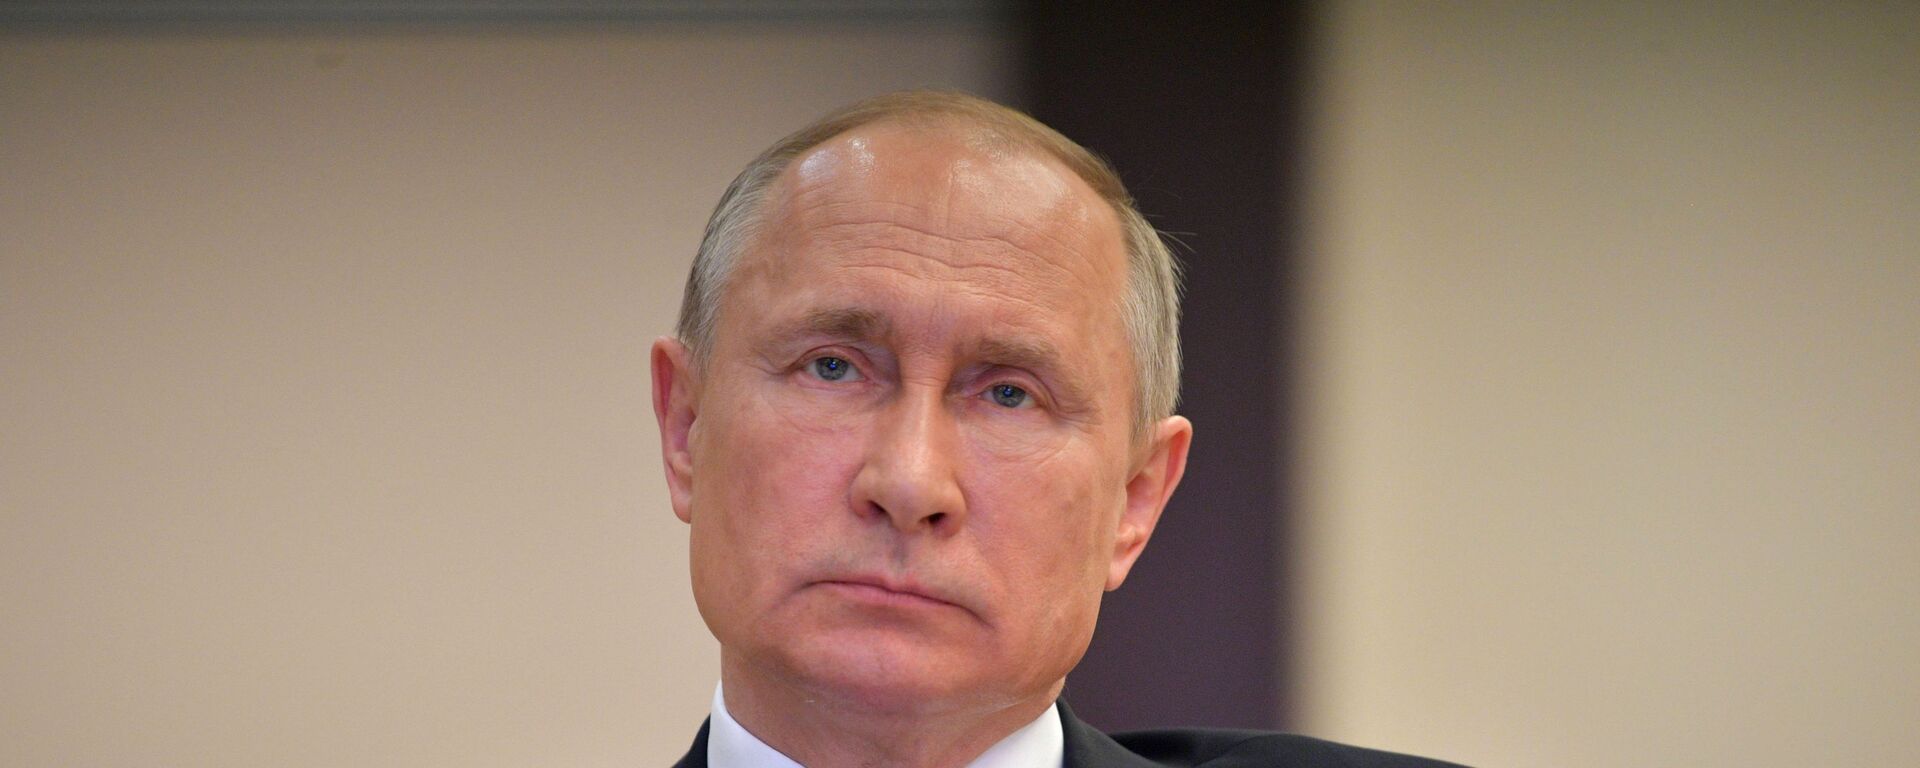 Президент РФ Владимир Путин - Sputnik Արմենիա, 1920, 03.07.2020